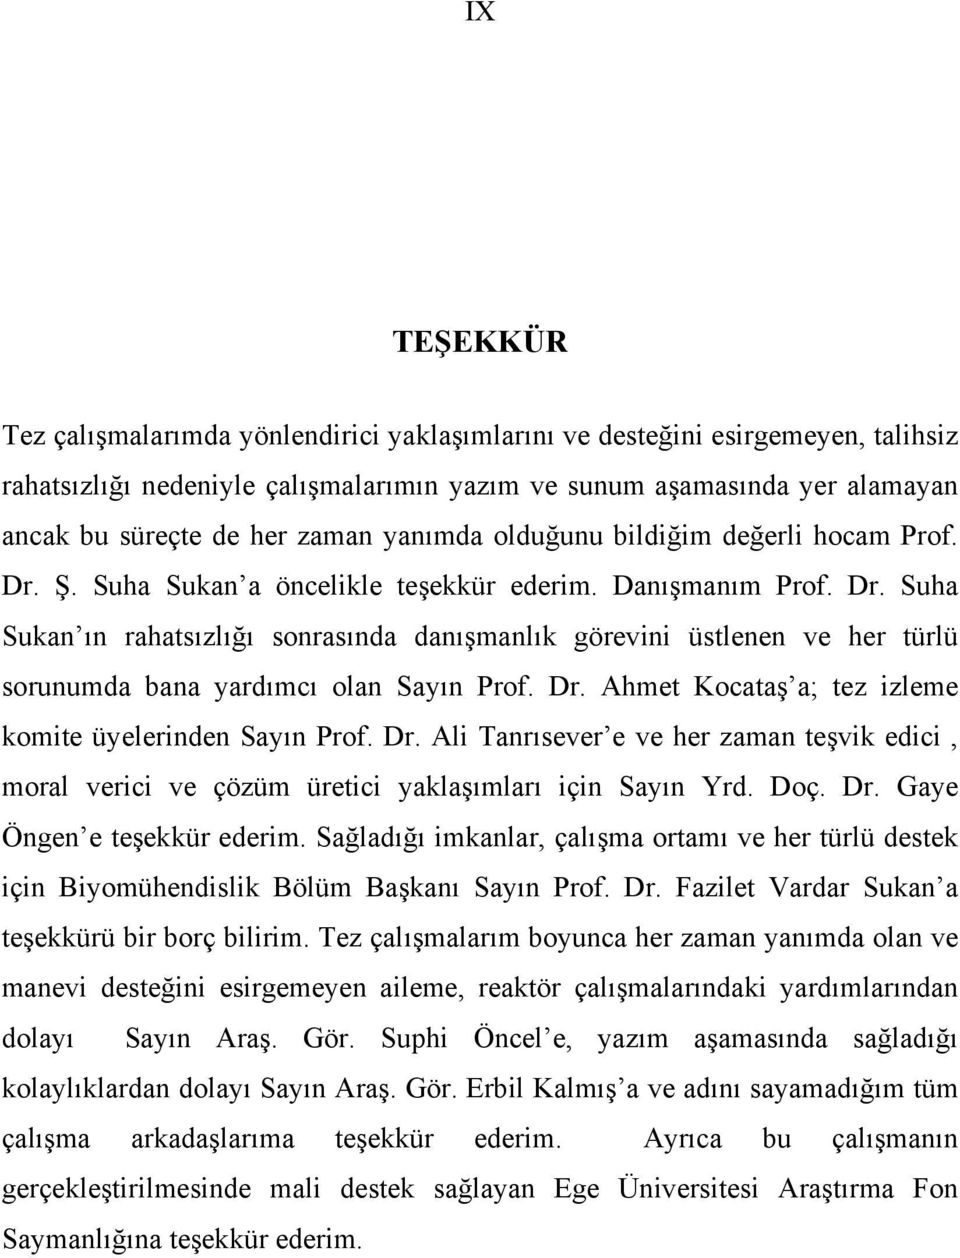 Dr. Ahmet Kocataş a; tez izleme komite üyelerinden Sayın Prof. Dr. Ali Tanrısever e ve her zaman teşvik edici, moral verici ve çözüm üretici yaklaşımları için Sayın Yrd. Doç. Dr. Gaye Öngen e teşekkür ederim.